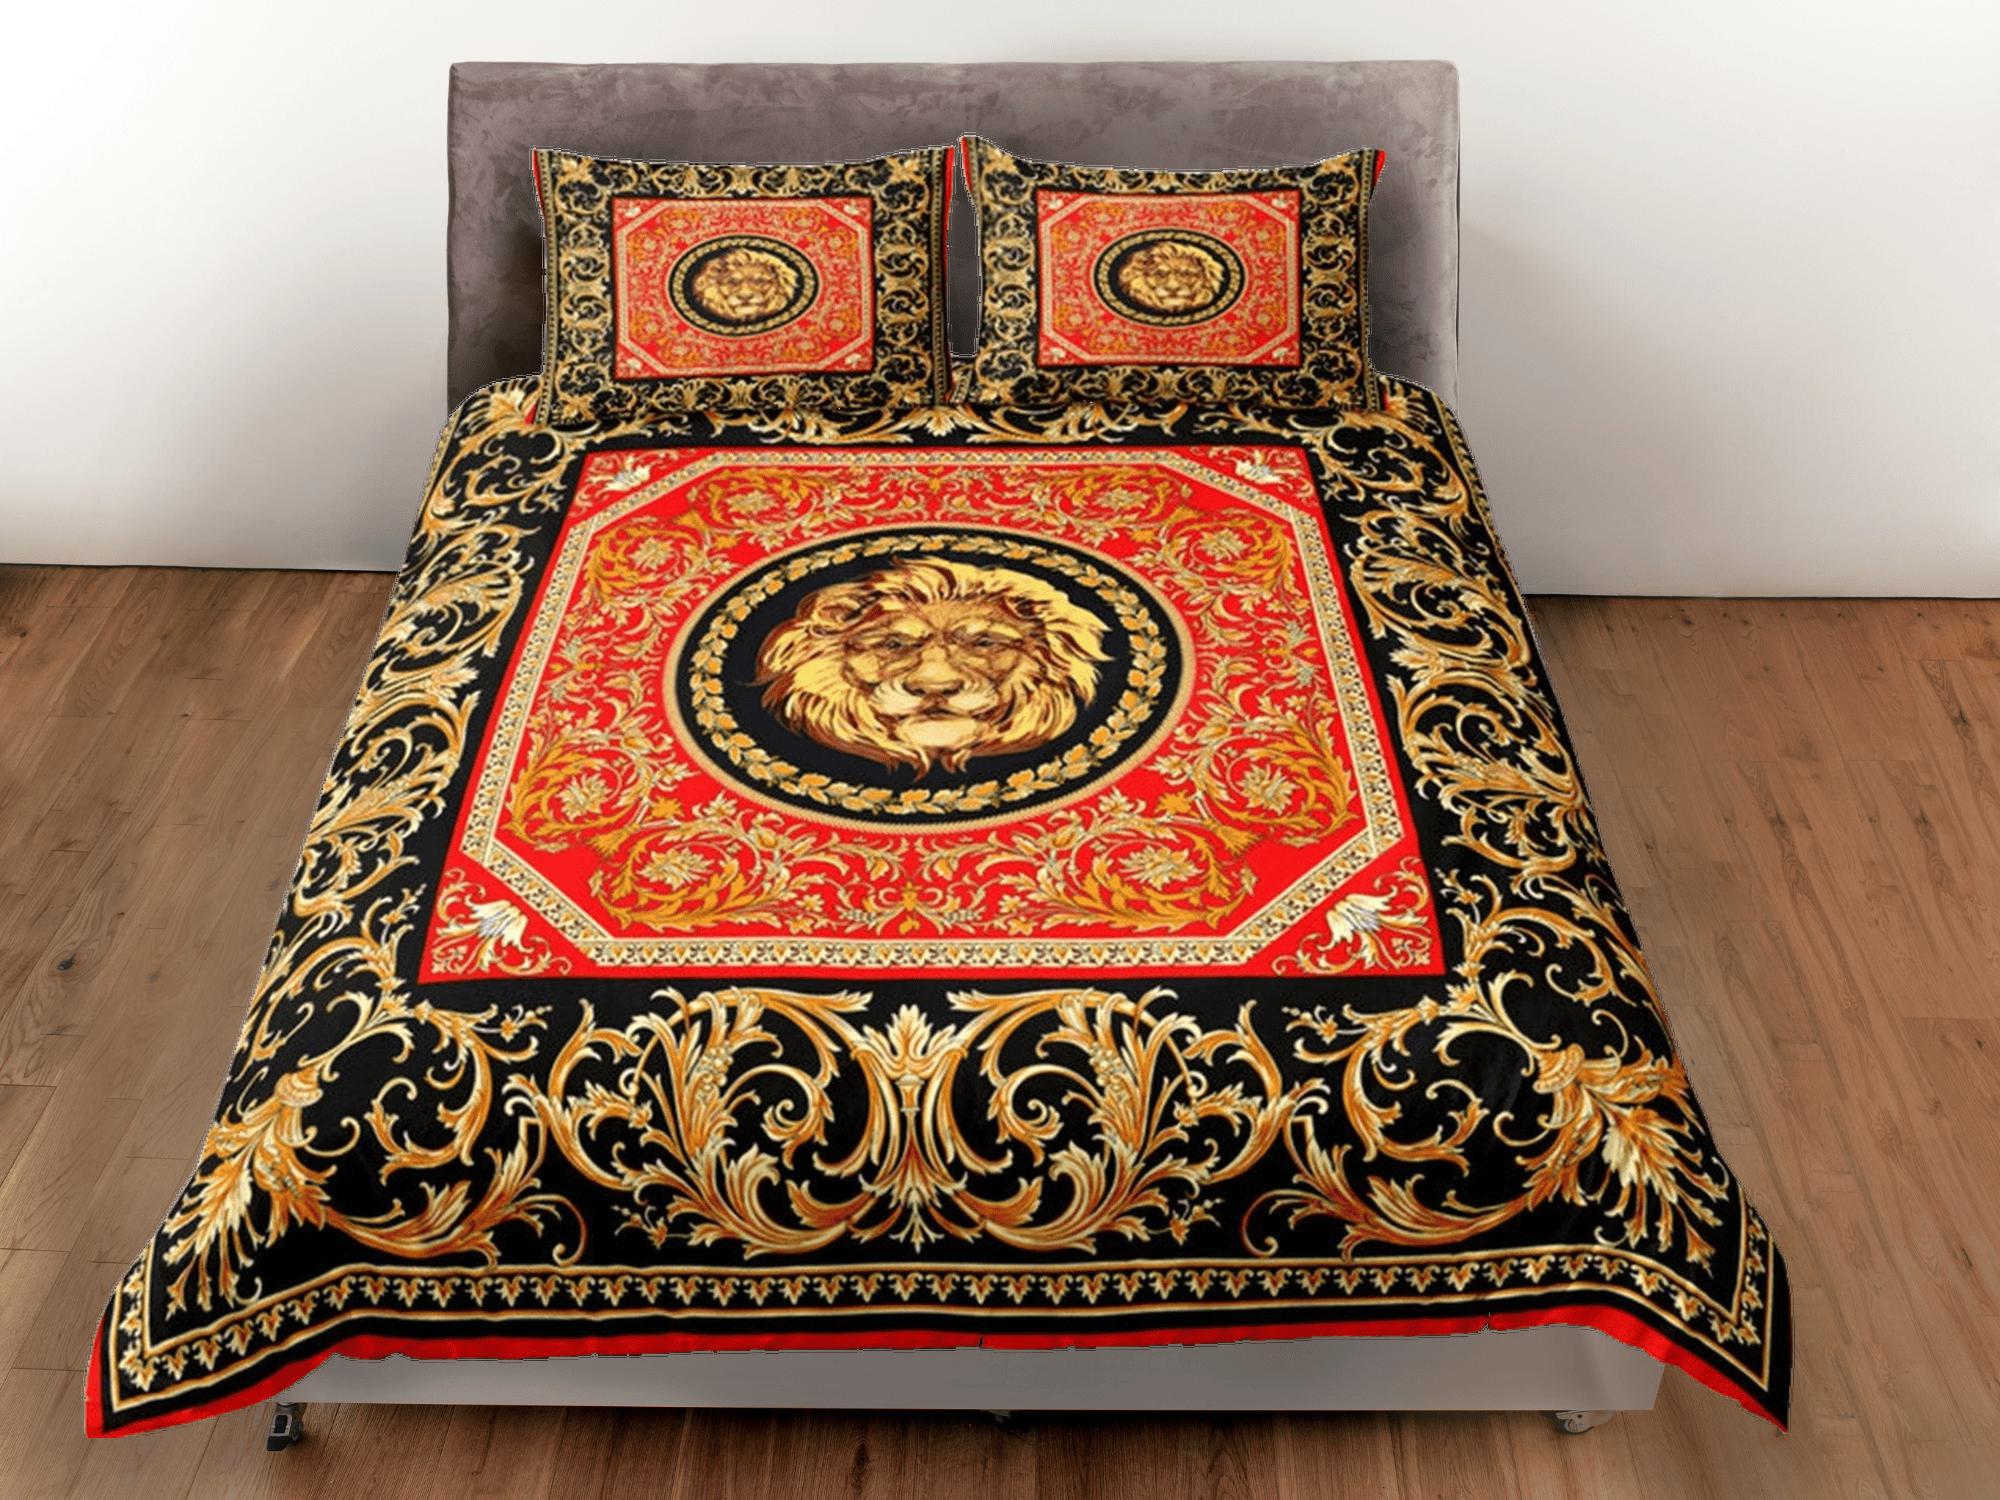 daintyduvet Baroque Lion Luxury Duvet Cover Set Aesthetic Bedding Set Full Victorian Decor,